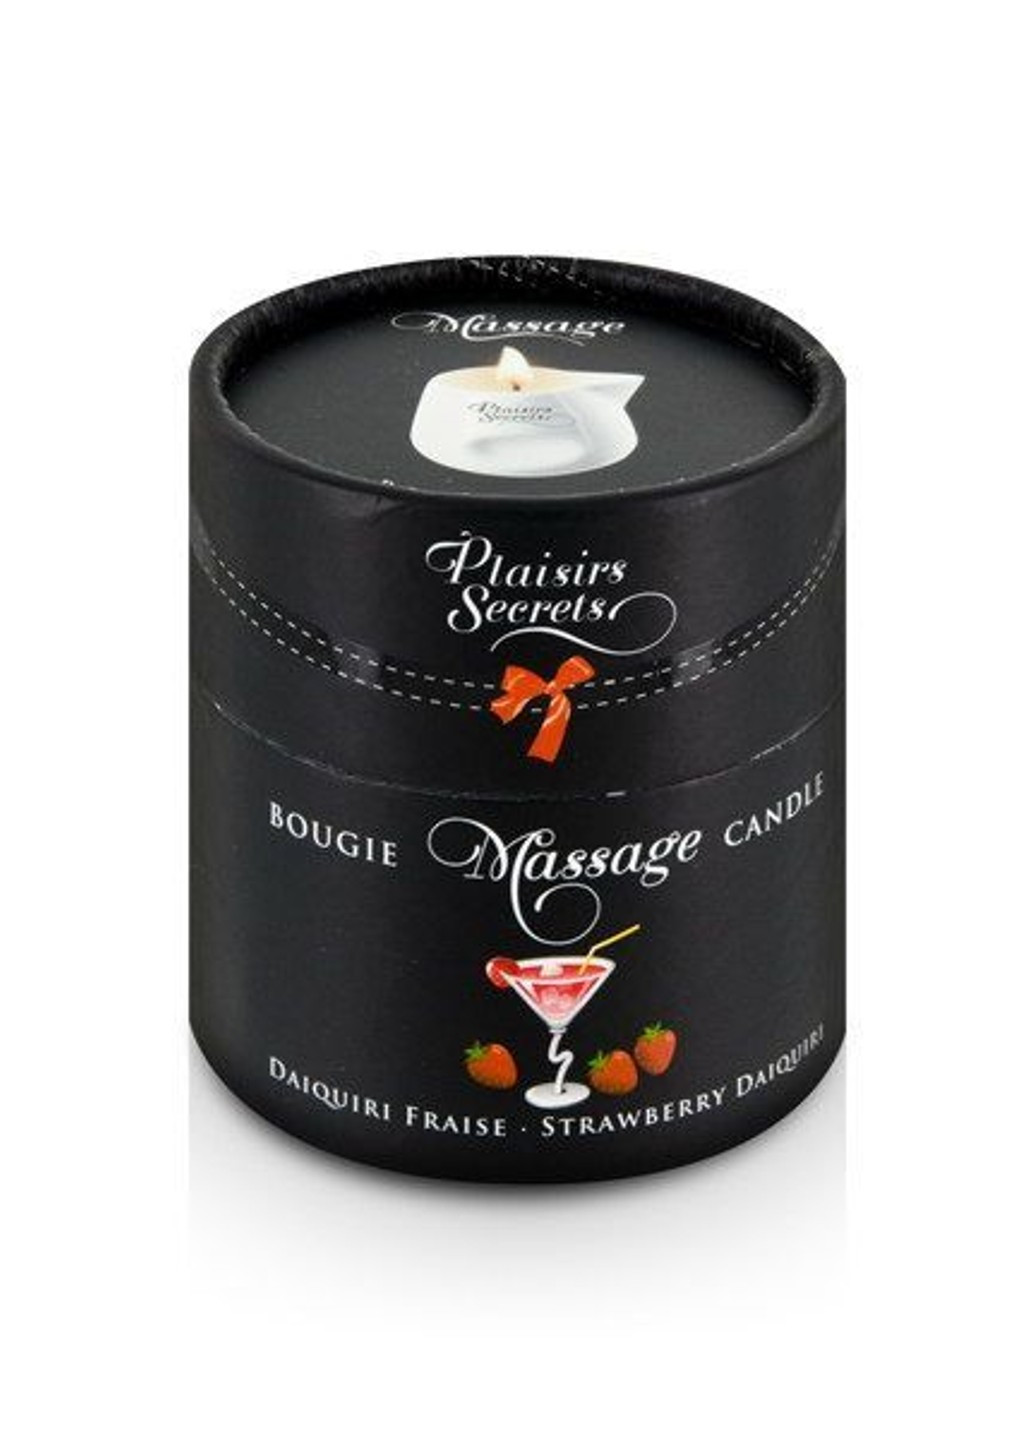 Массажная свеча Strawberry Daiquiri (80 мл) подарочная упаковка, керамический сосуд Plaisirs Secrets (255169323)